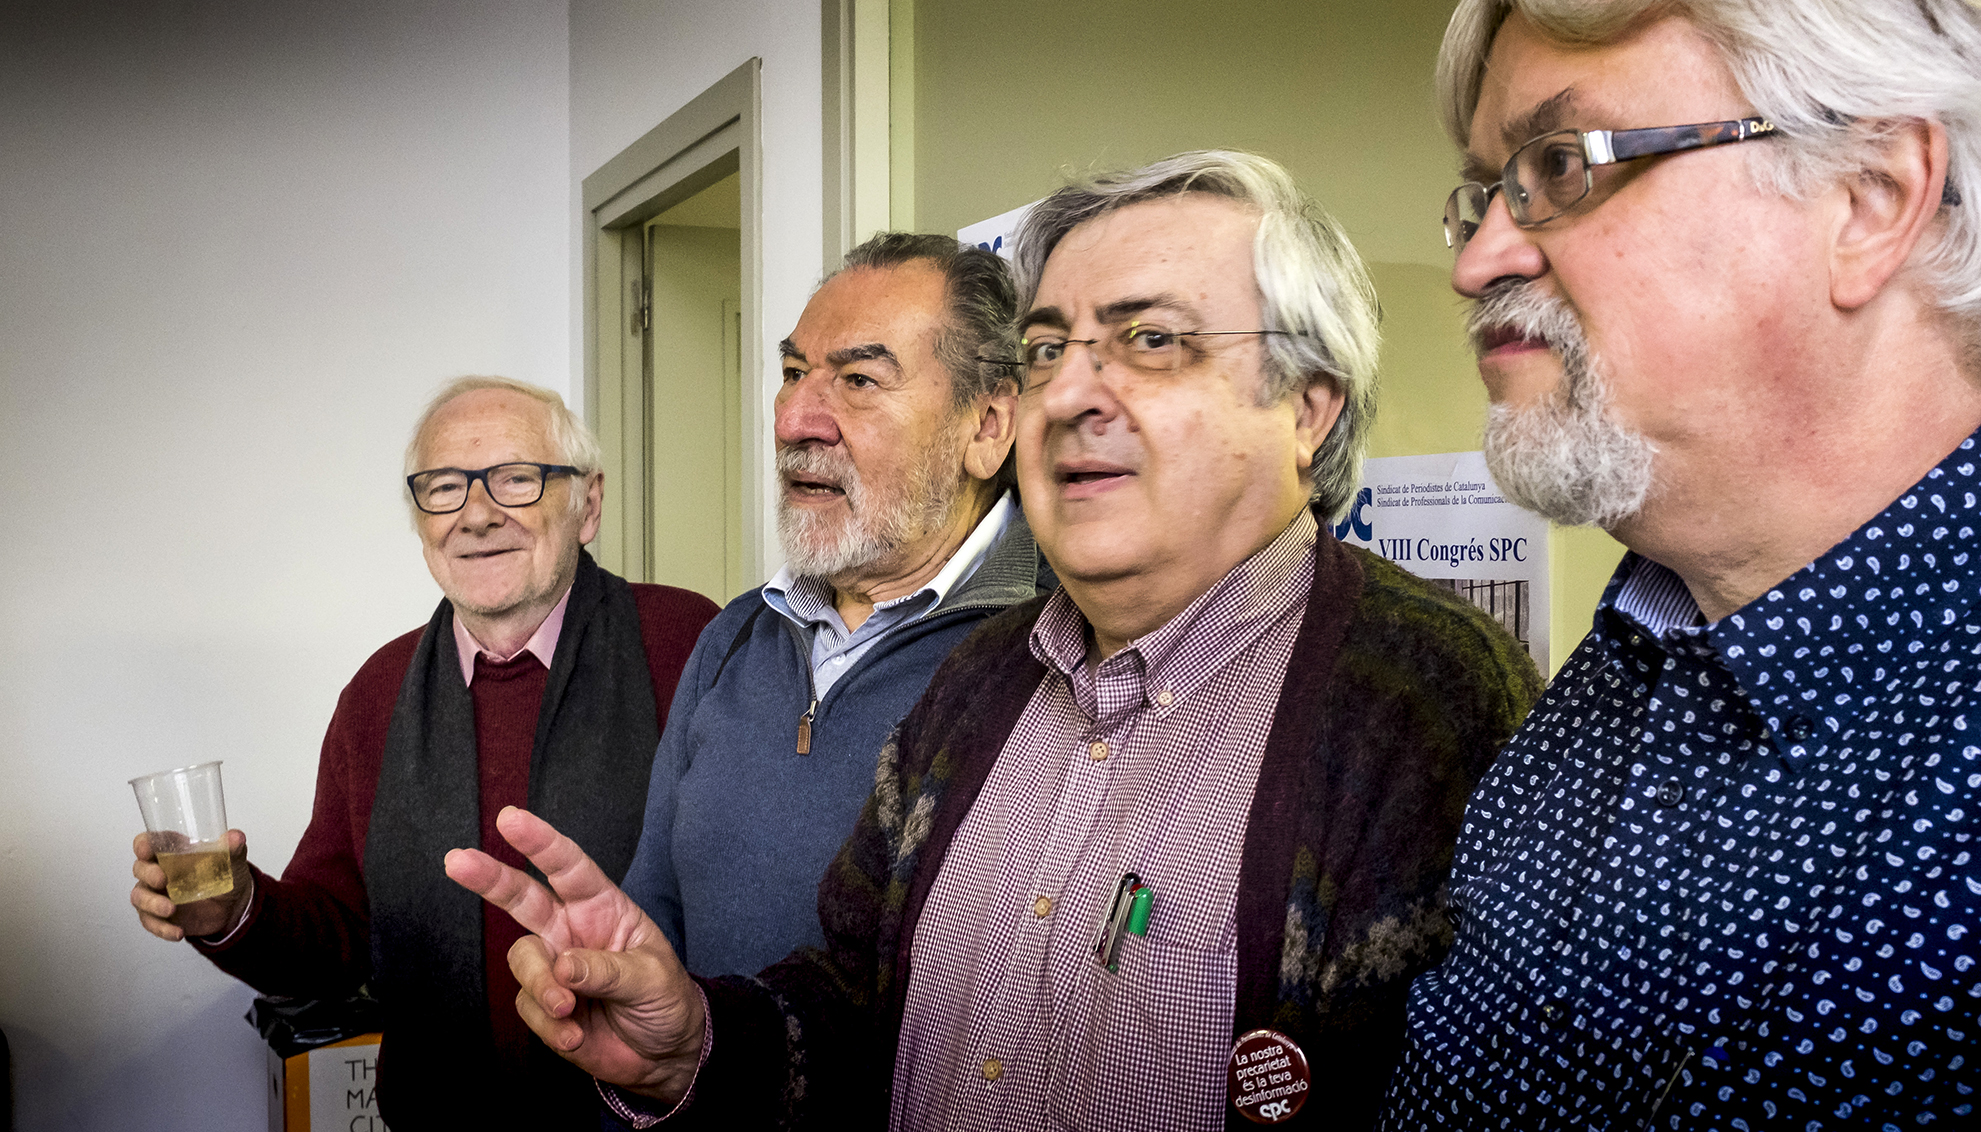 VIII Congrés SPC 2018 - Foto: Joan Puig - Sindicat de Periodistes de Catalunya - Sindicat de Professionals de la Comunicació